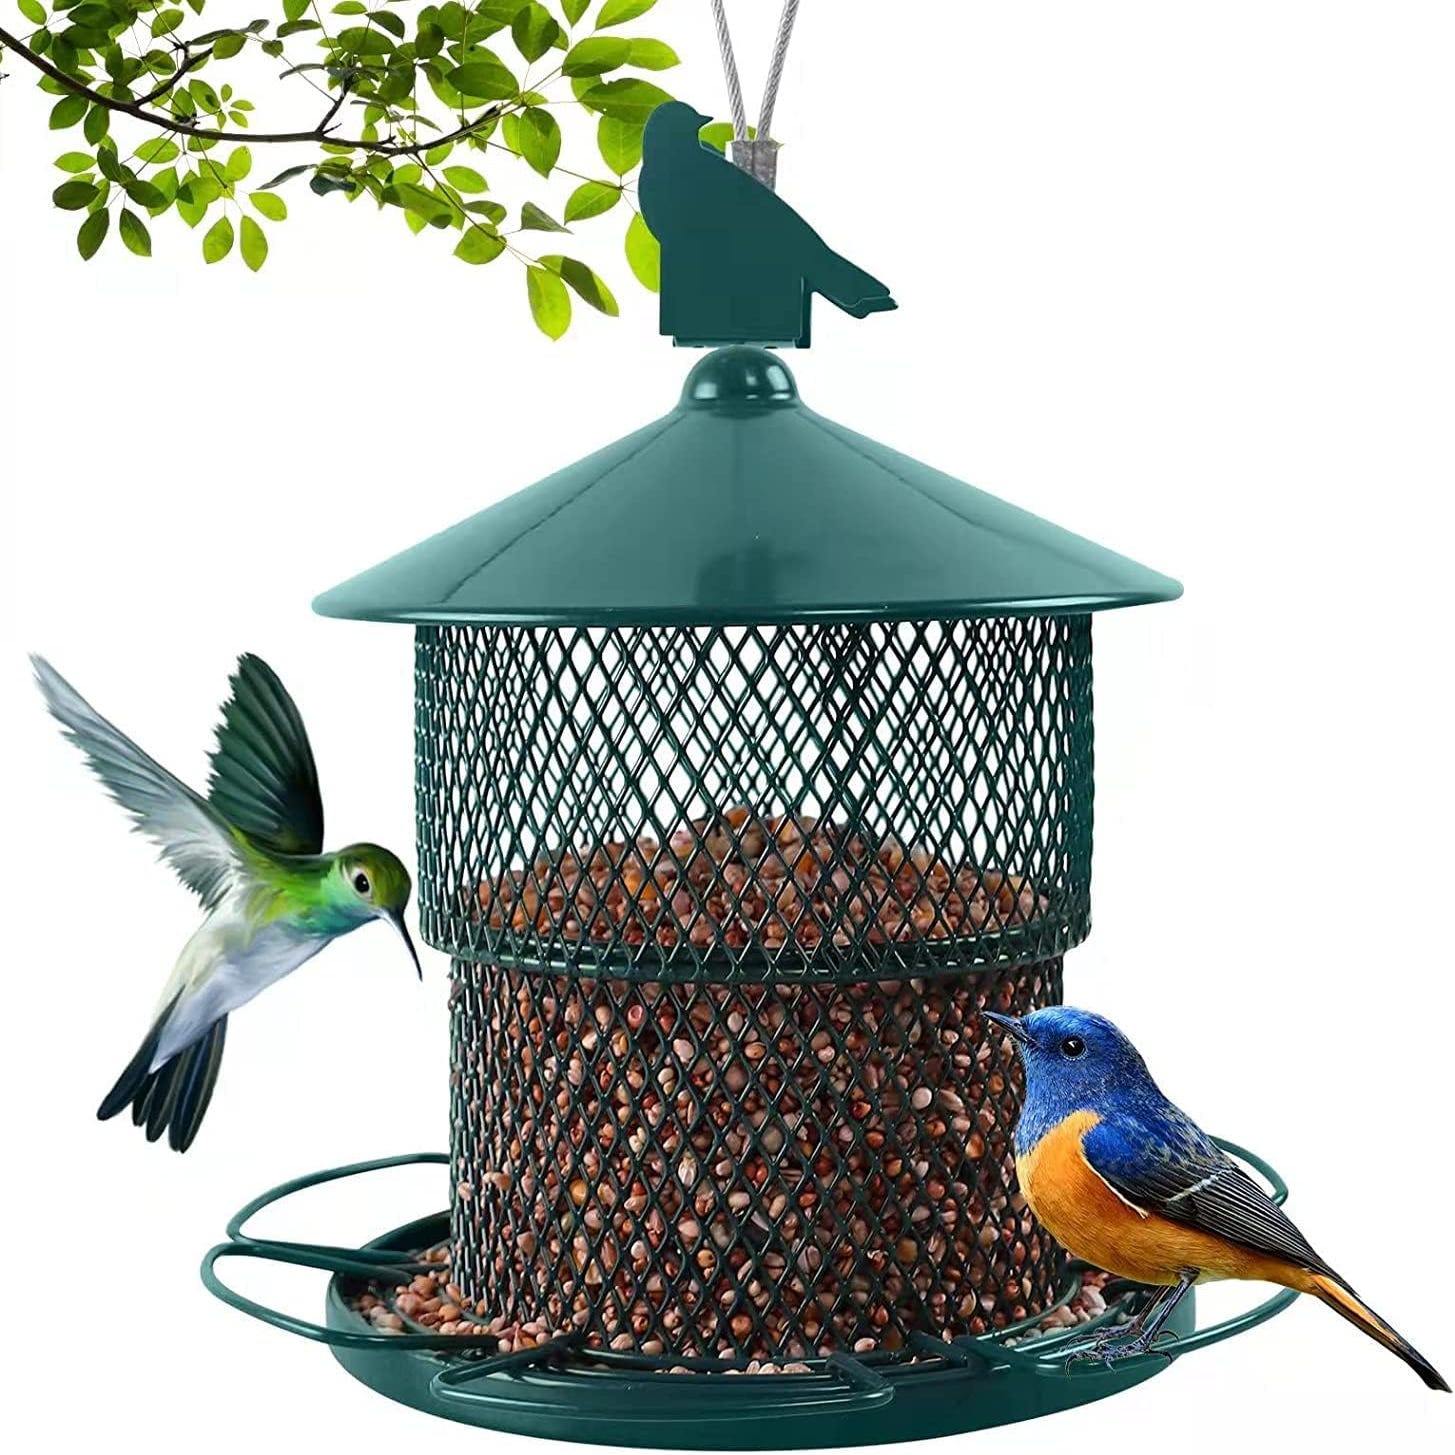 Mangeoire à oiseaux suspendue, mangeoire à oiseaux en métal avec toit et  base, pour graines pour oiseaux, gâteau mangeoire, fruits toutes saisons